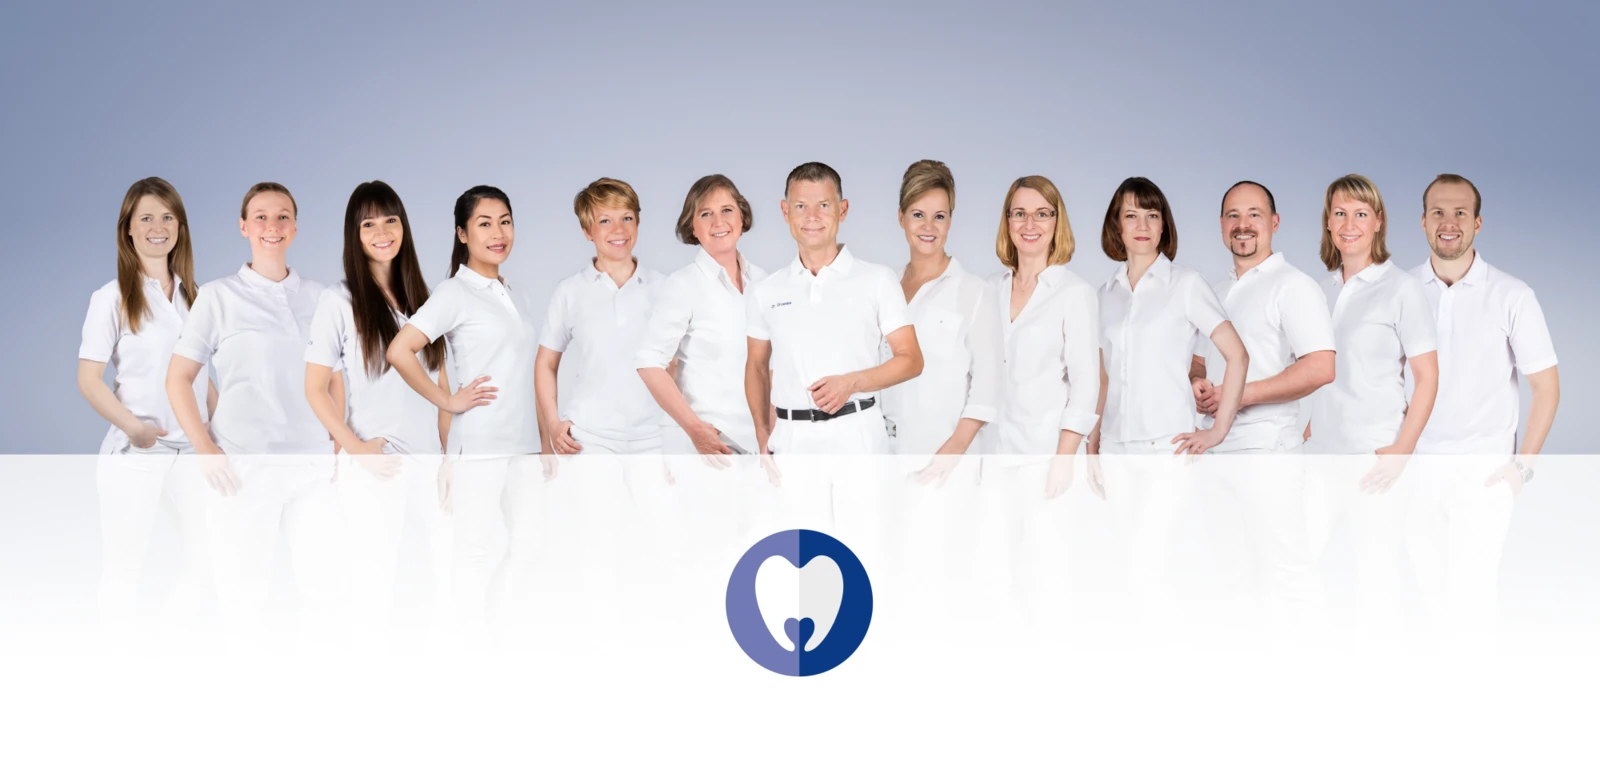 Gruppenbild für Jobangebot für Zahnärzte im ZZB